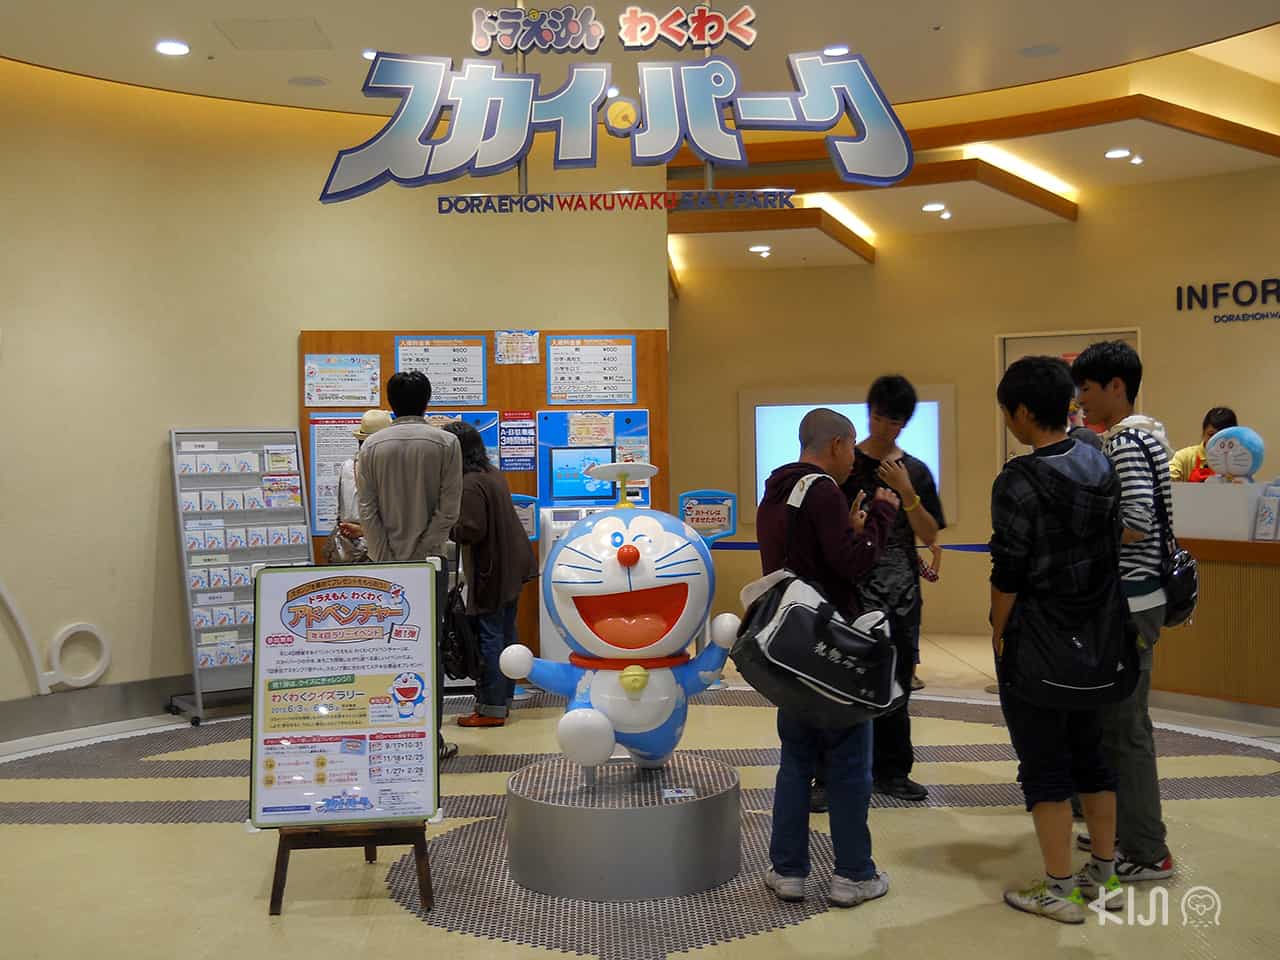 DoraemonWakuwaku Sky Park